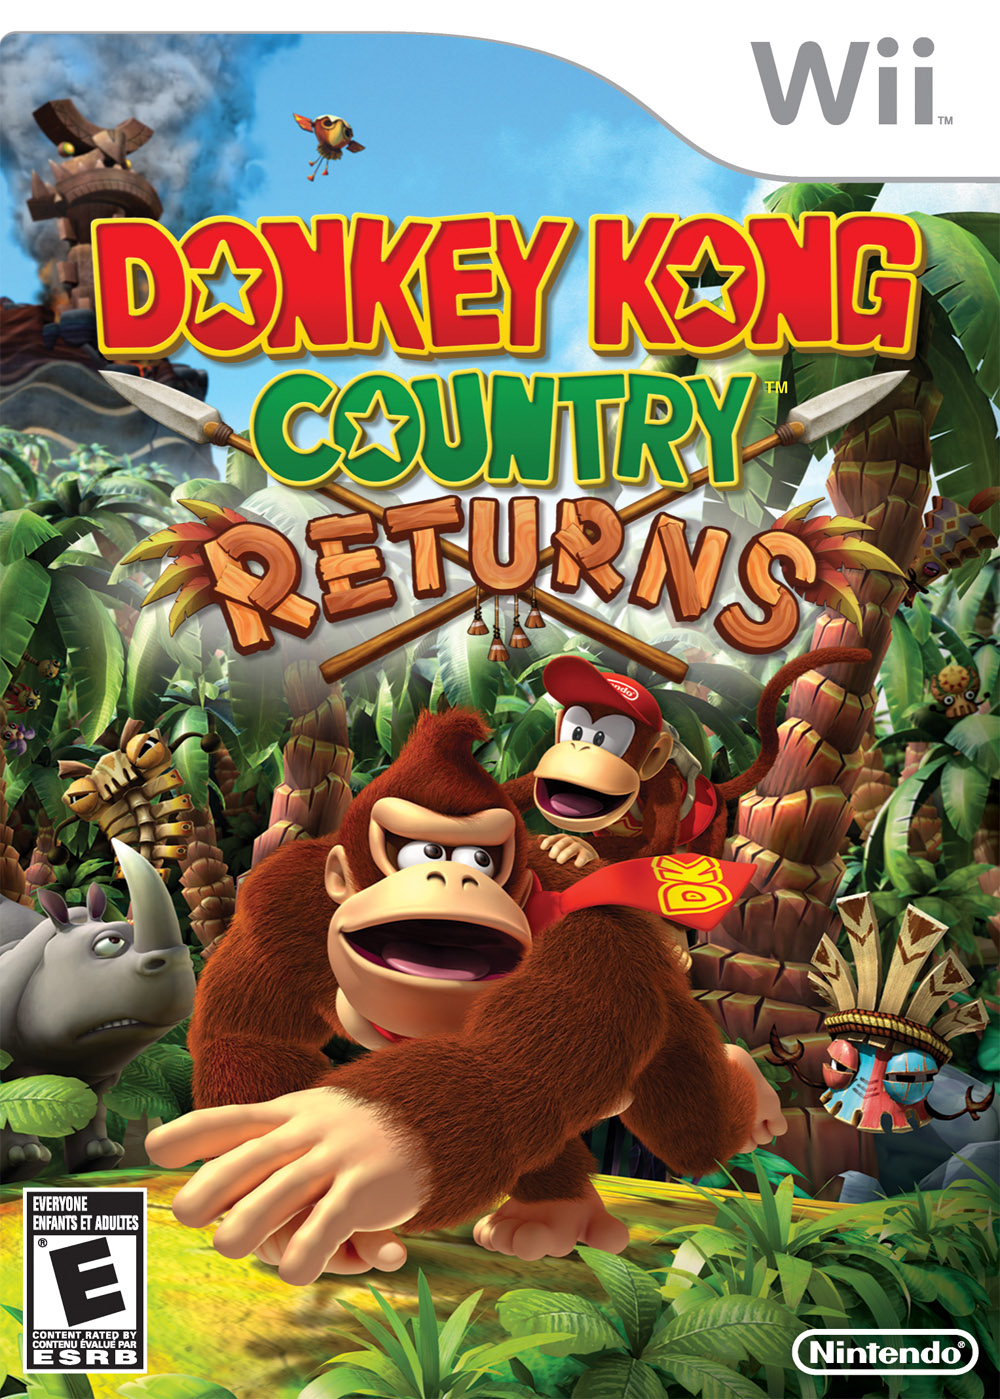 Diddy Kong – Wikipédia, a enciclopédia livre